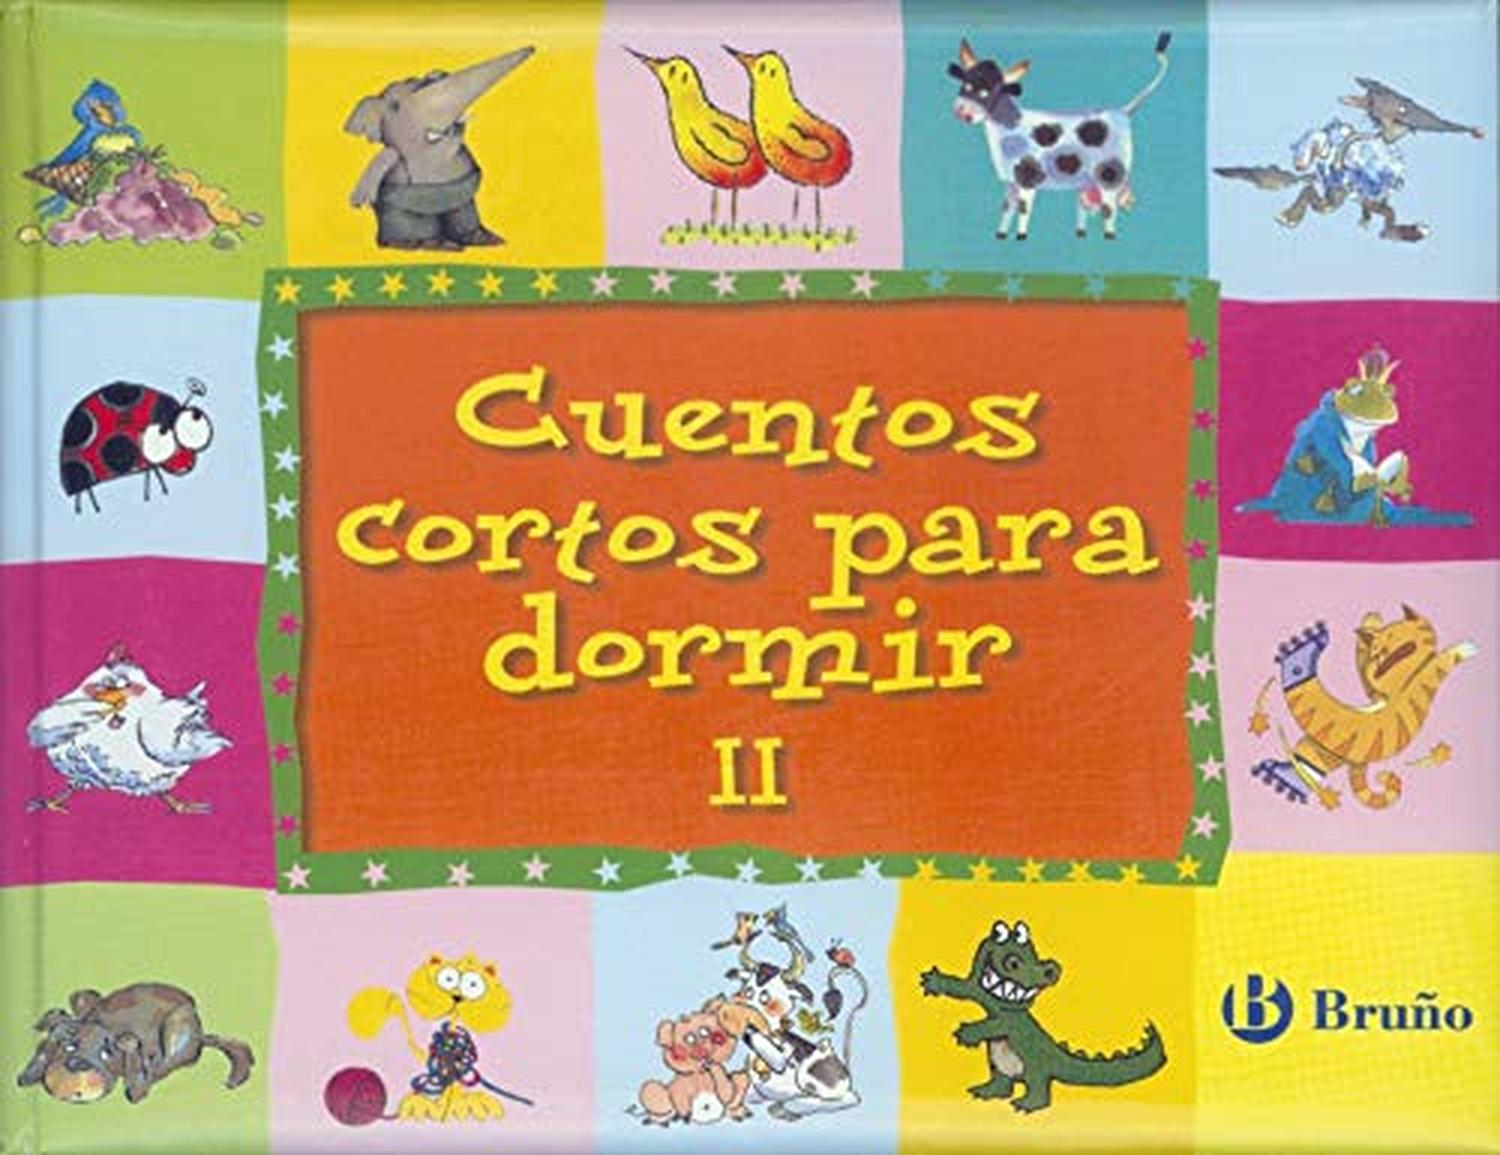 Cuentos para niños de 2 años (Cuentos y ficción) – Cadabra & Books